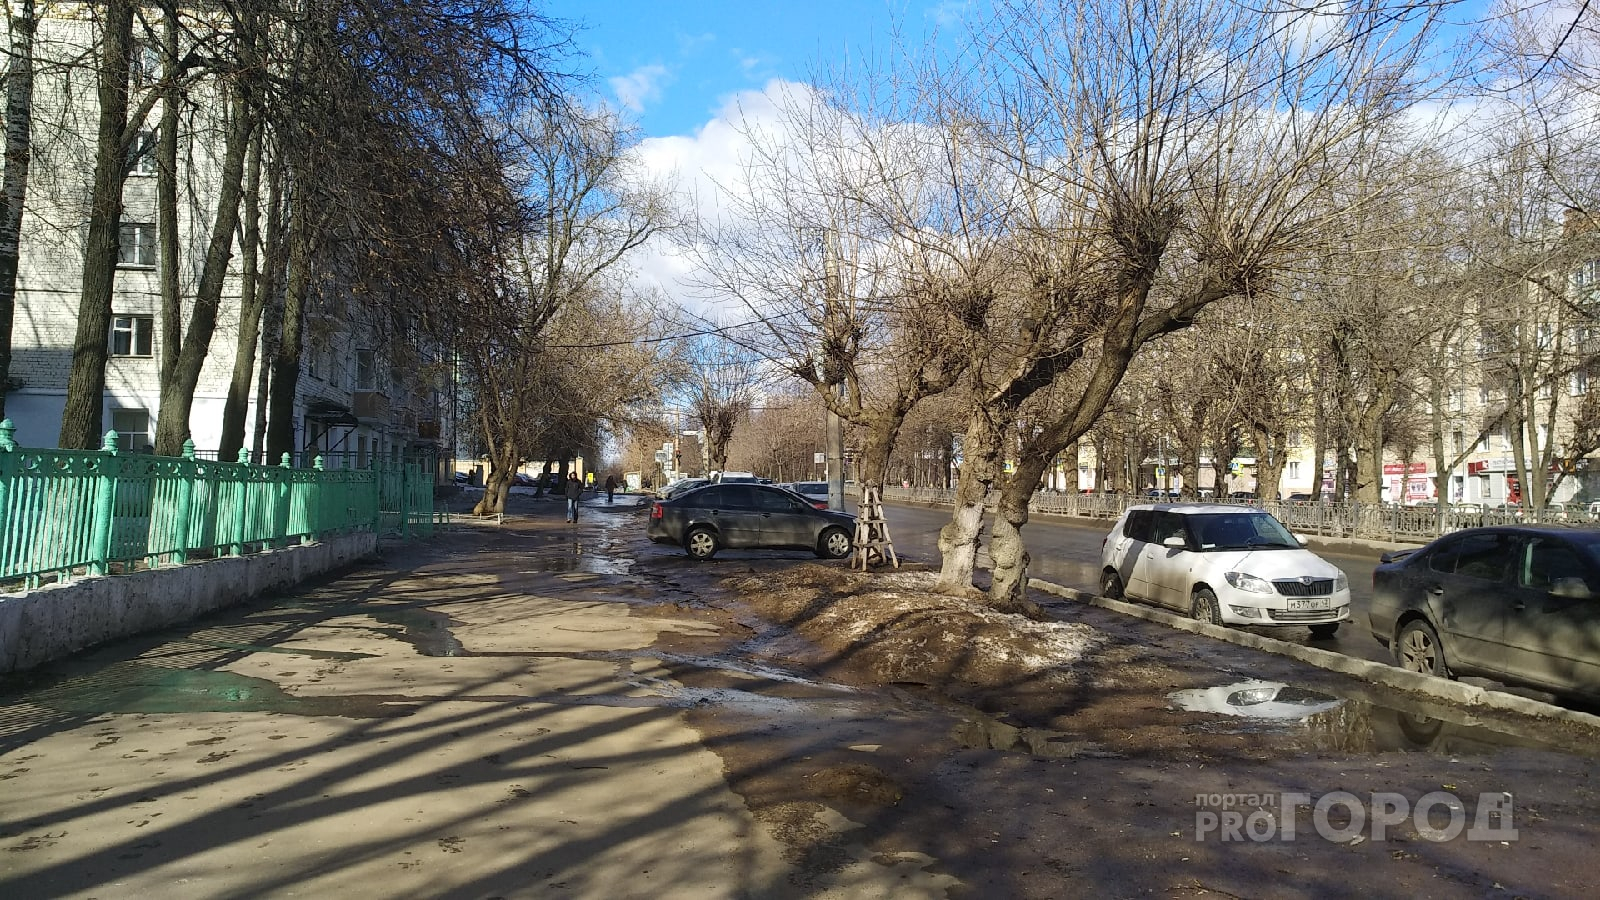 Первая гроза и потепление: прогноз погоды в Кирове на неделю с 13 по 19 апреля